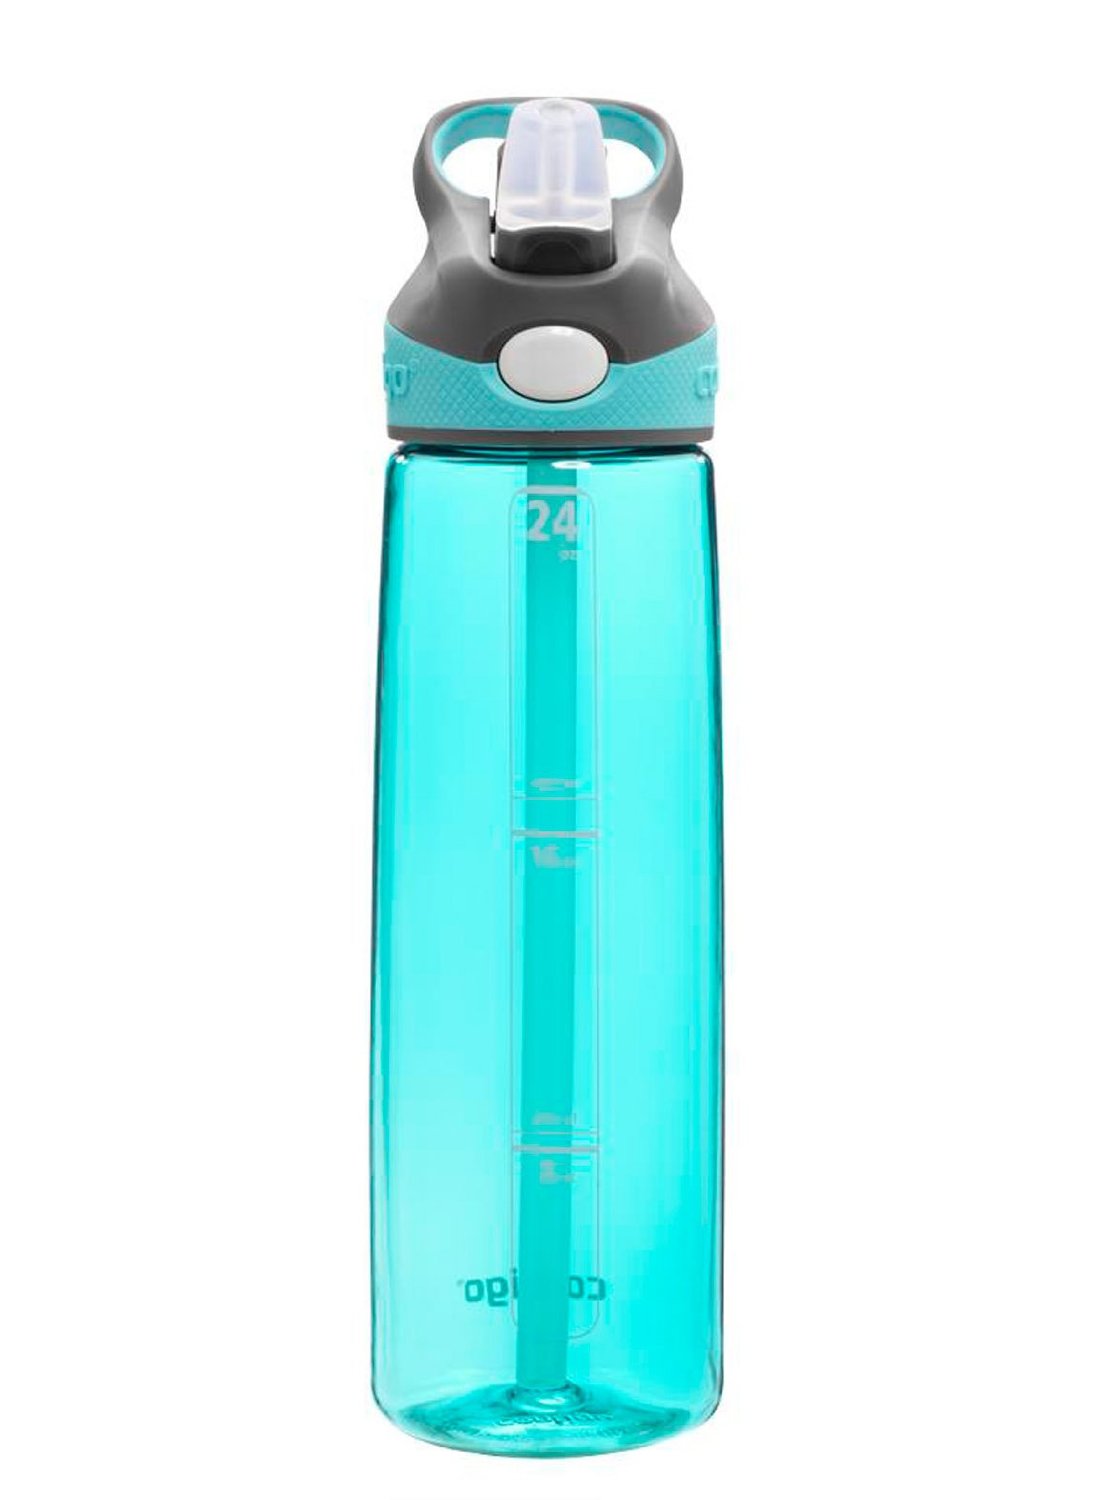 Autospout Water Bottle